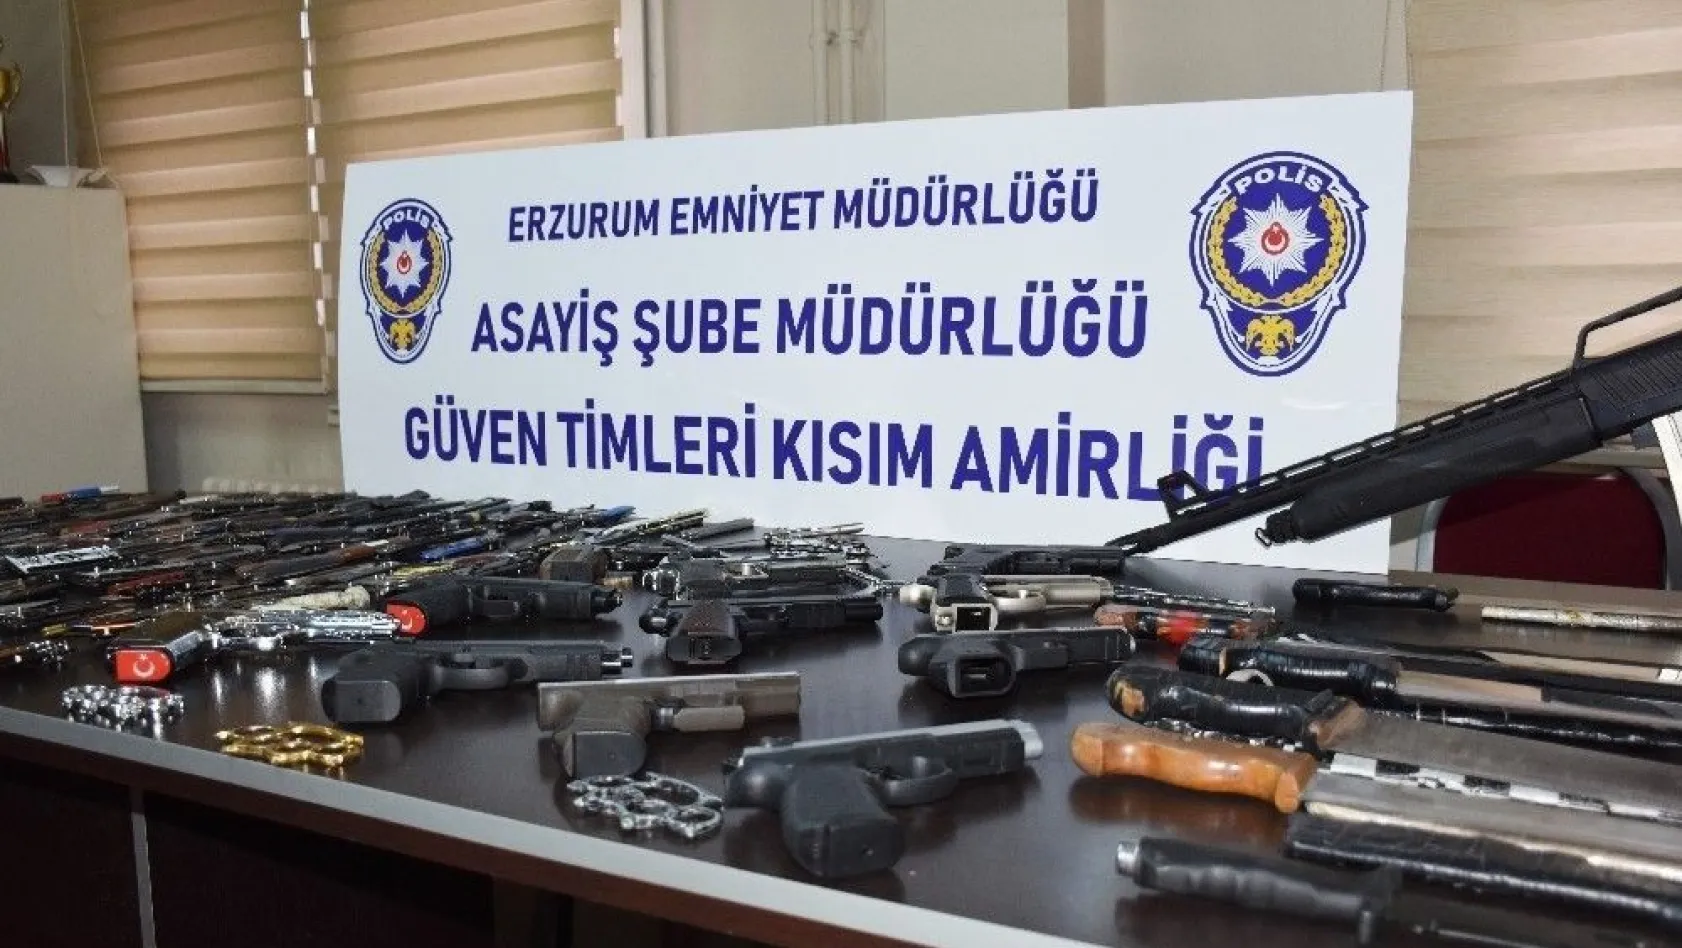 Erzurum'da çeşitli suçlardan aranan bin 356 şahıs yakalandı
